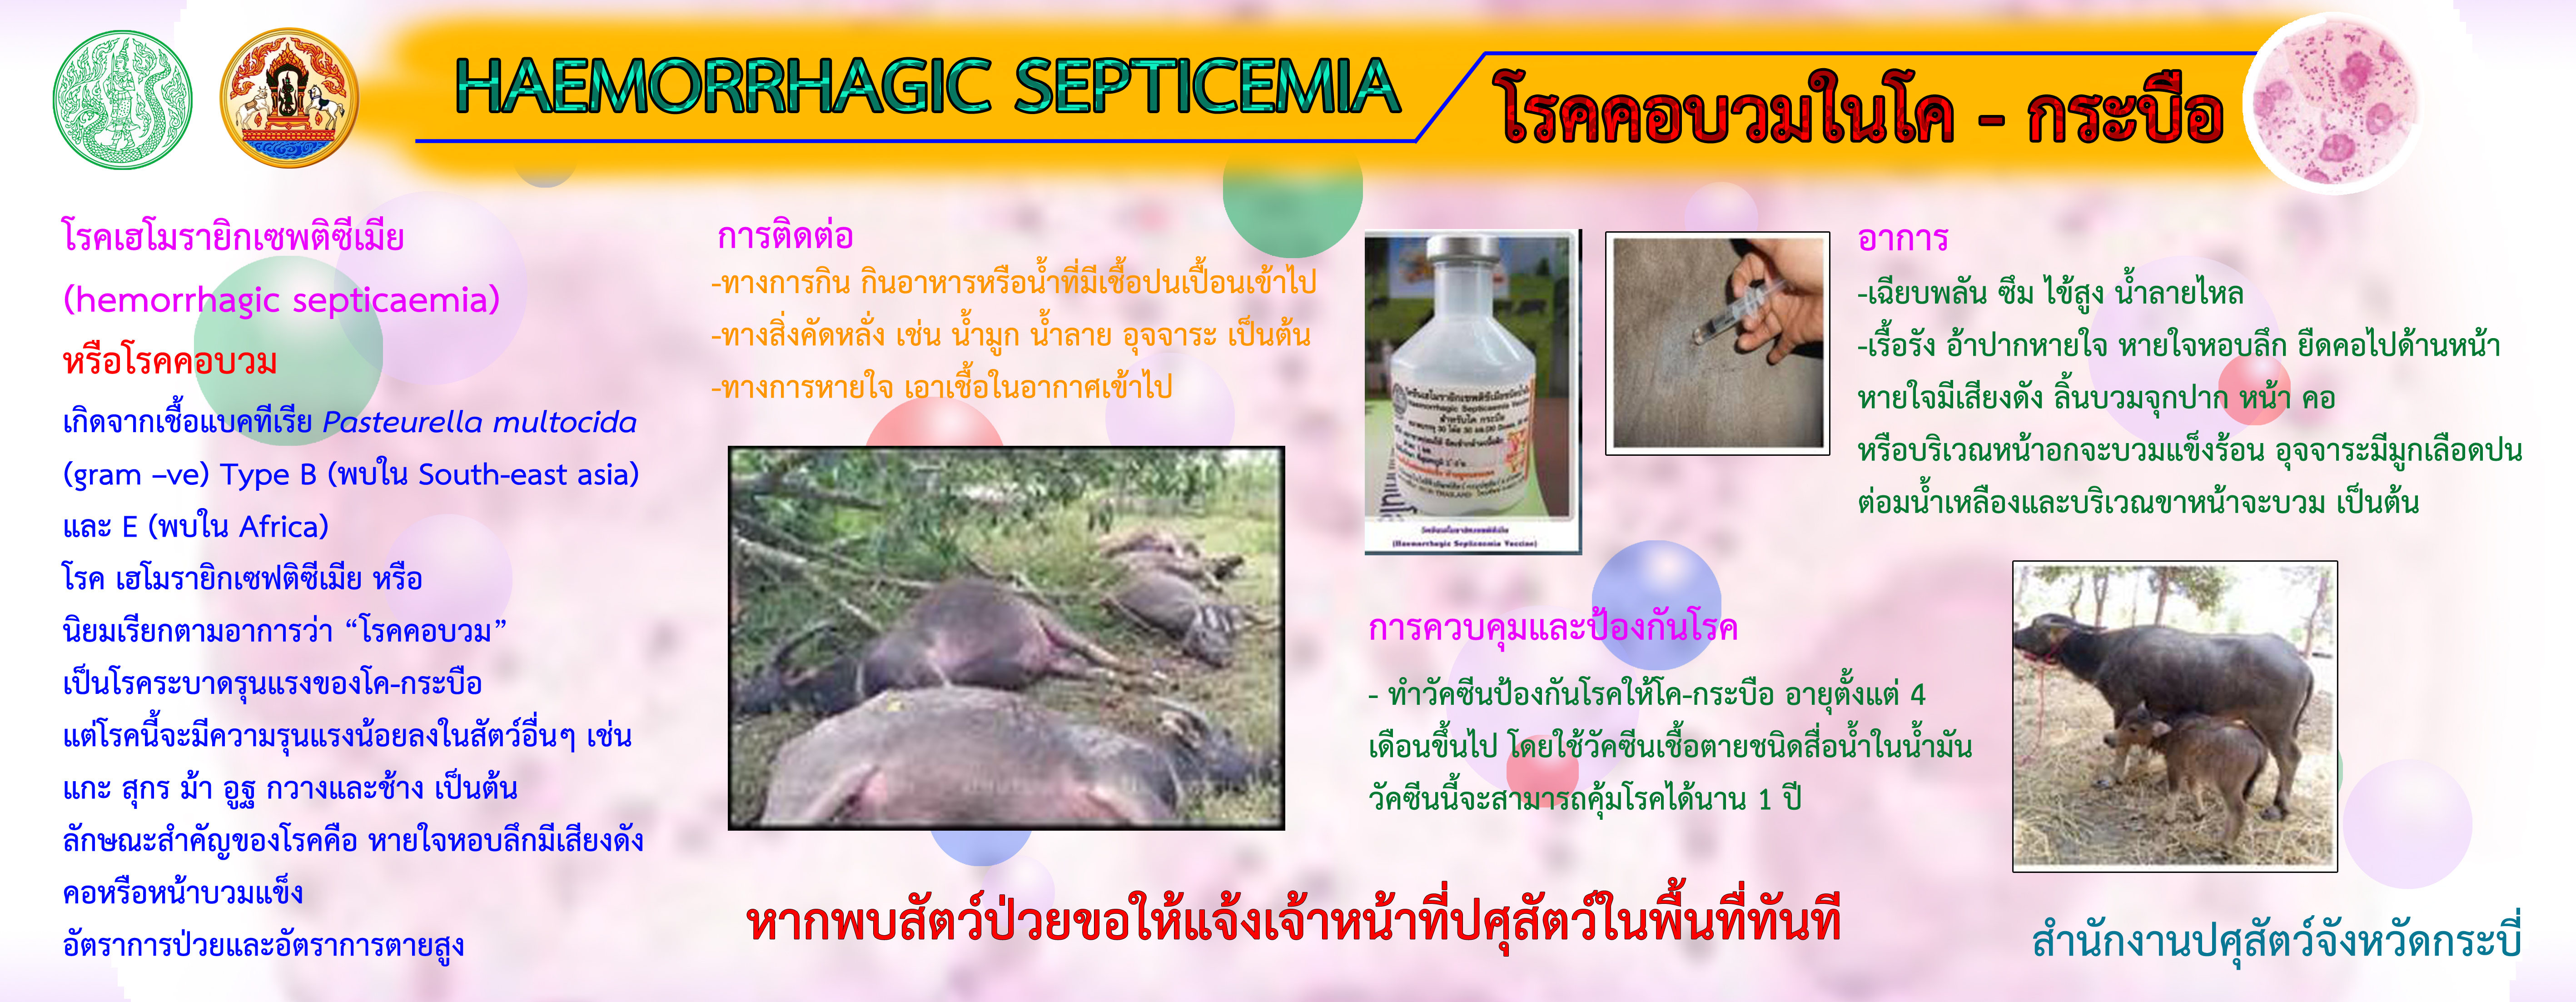 haemorrhagic septicemia